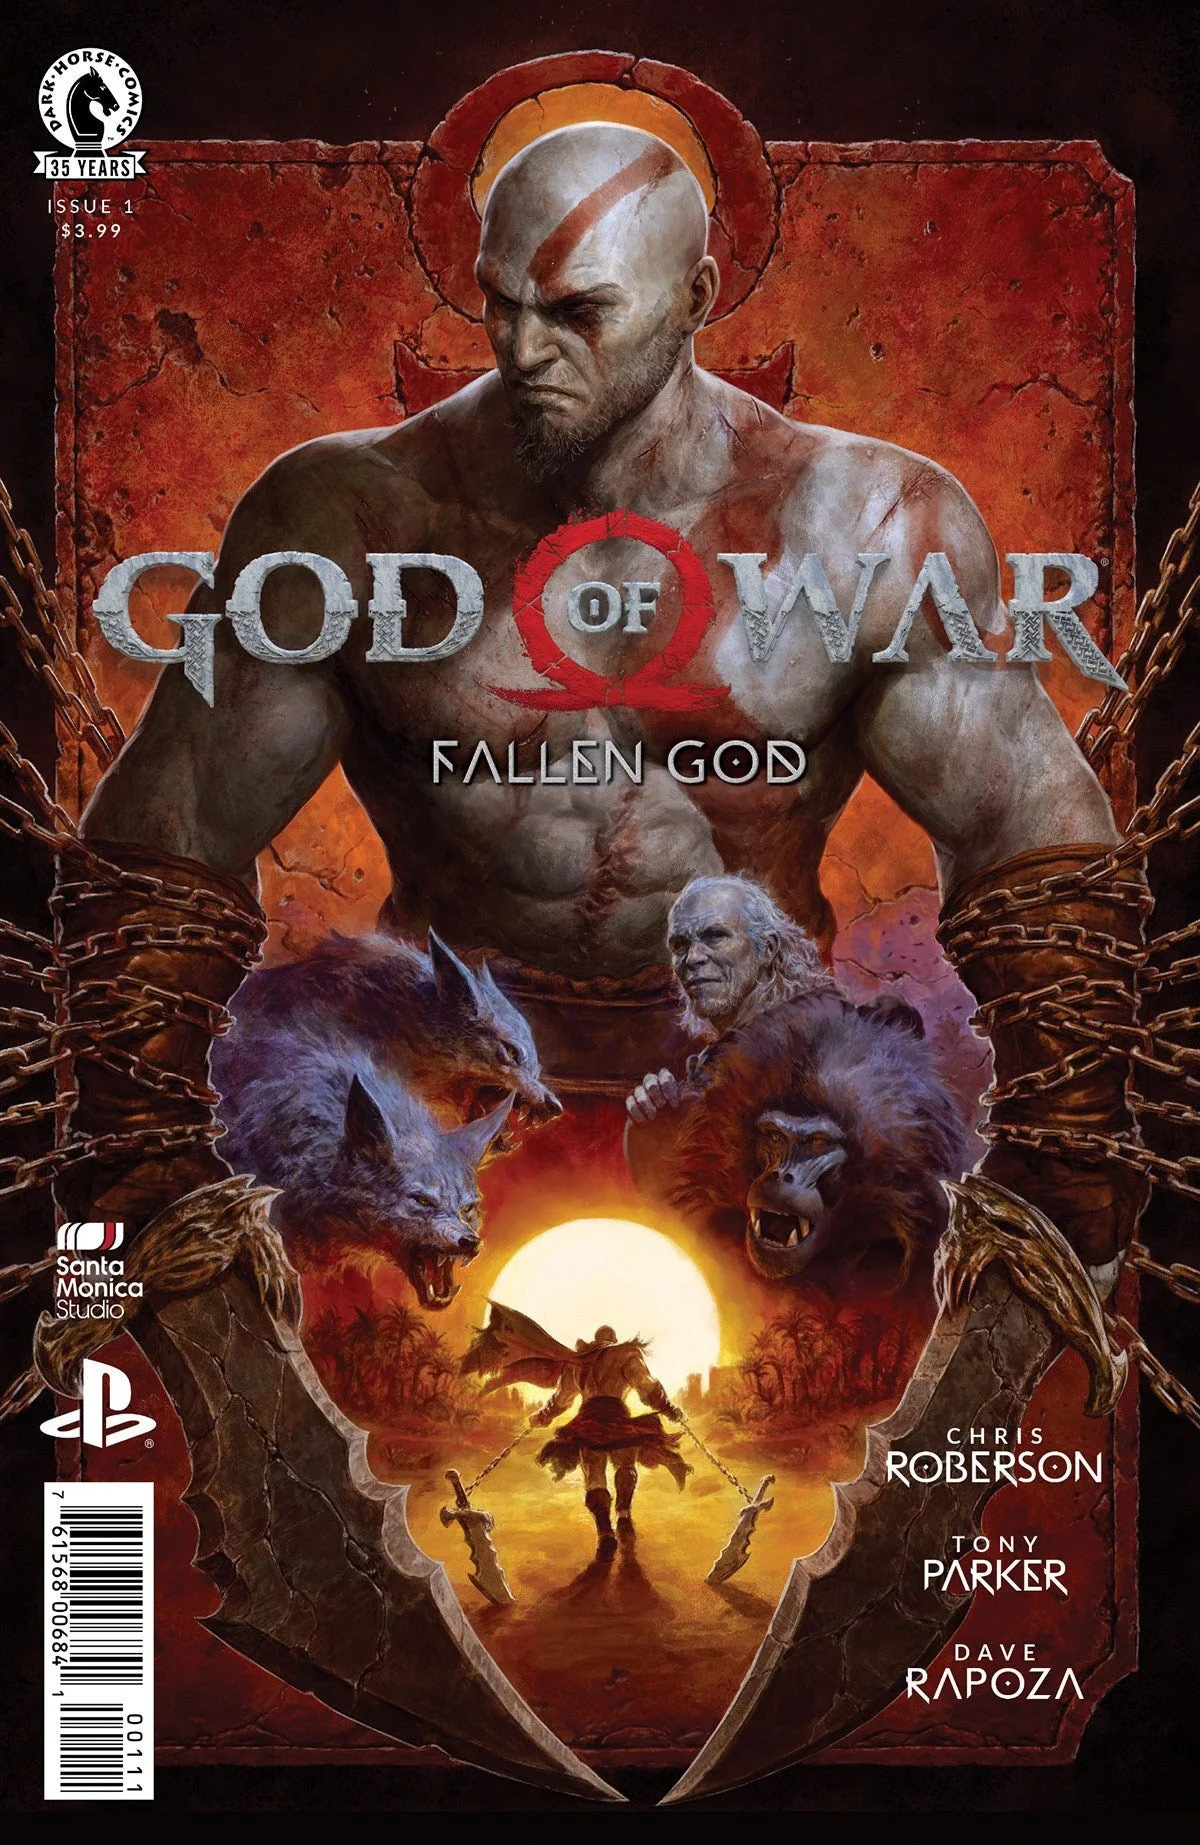 Комикс по God of War про события после триквела начнёт выходить 10 марта - фото 1